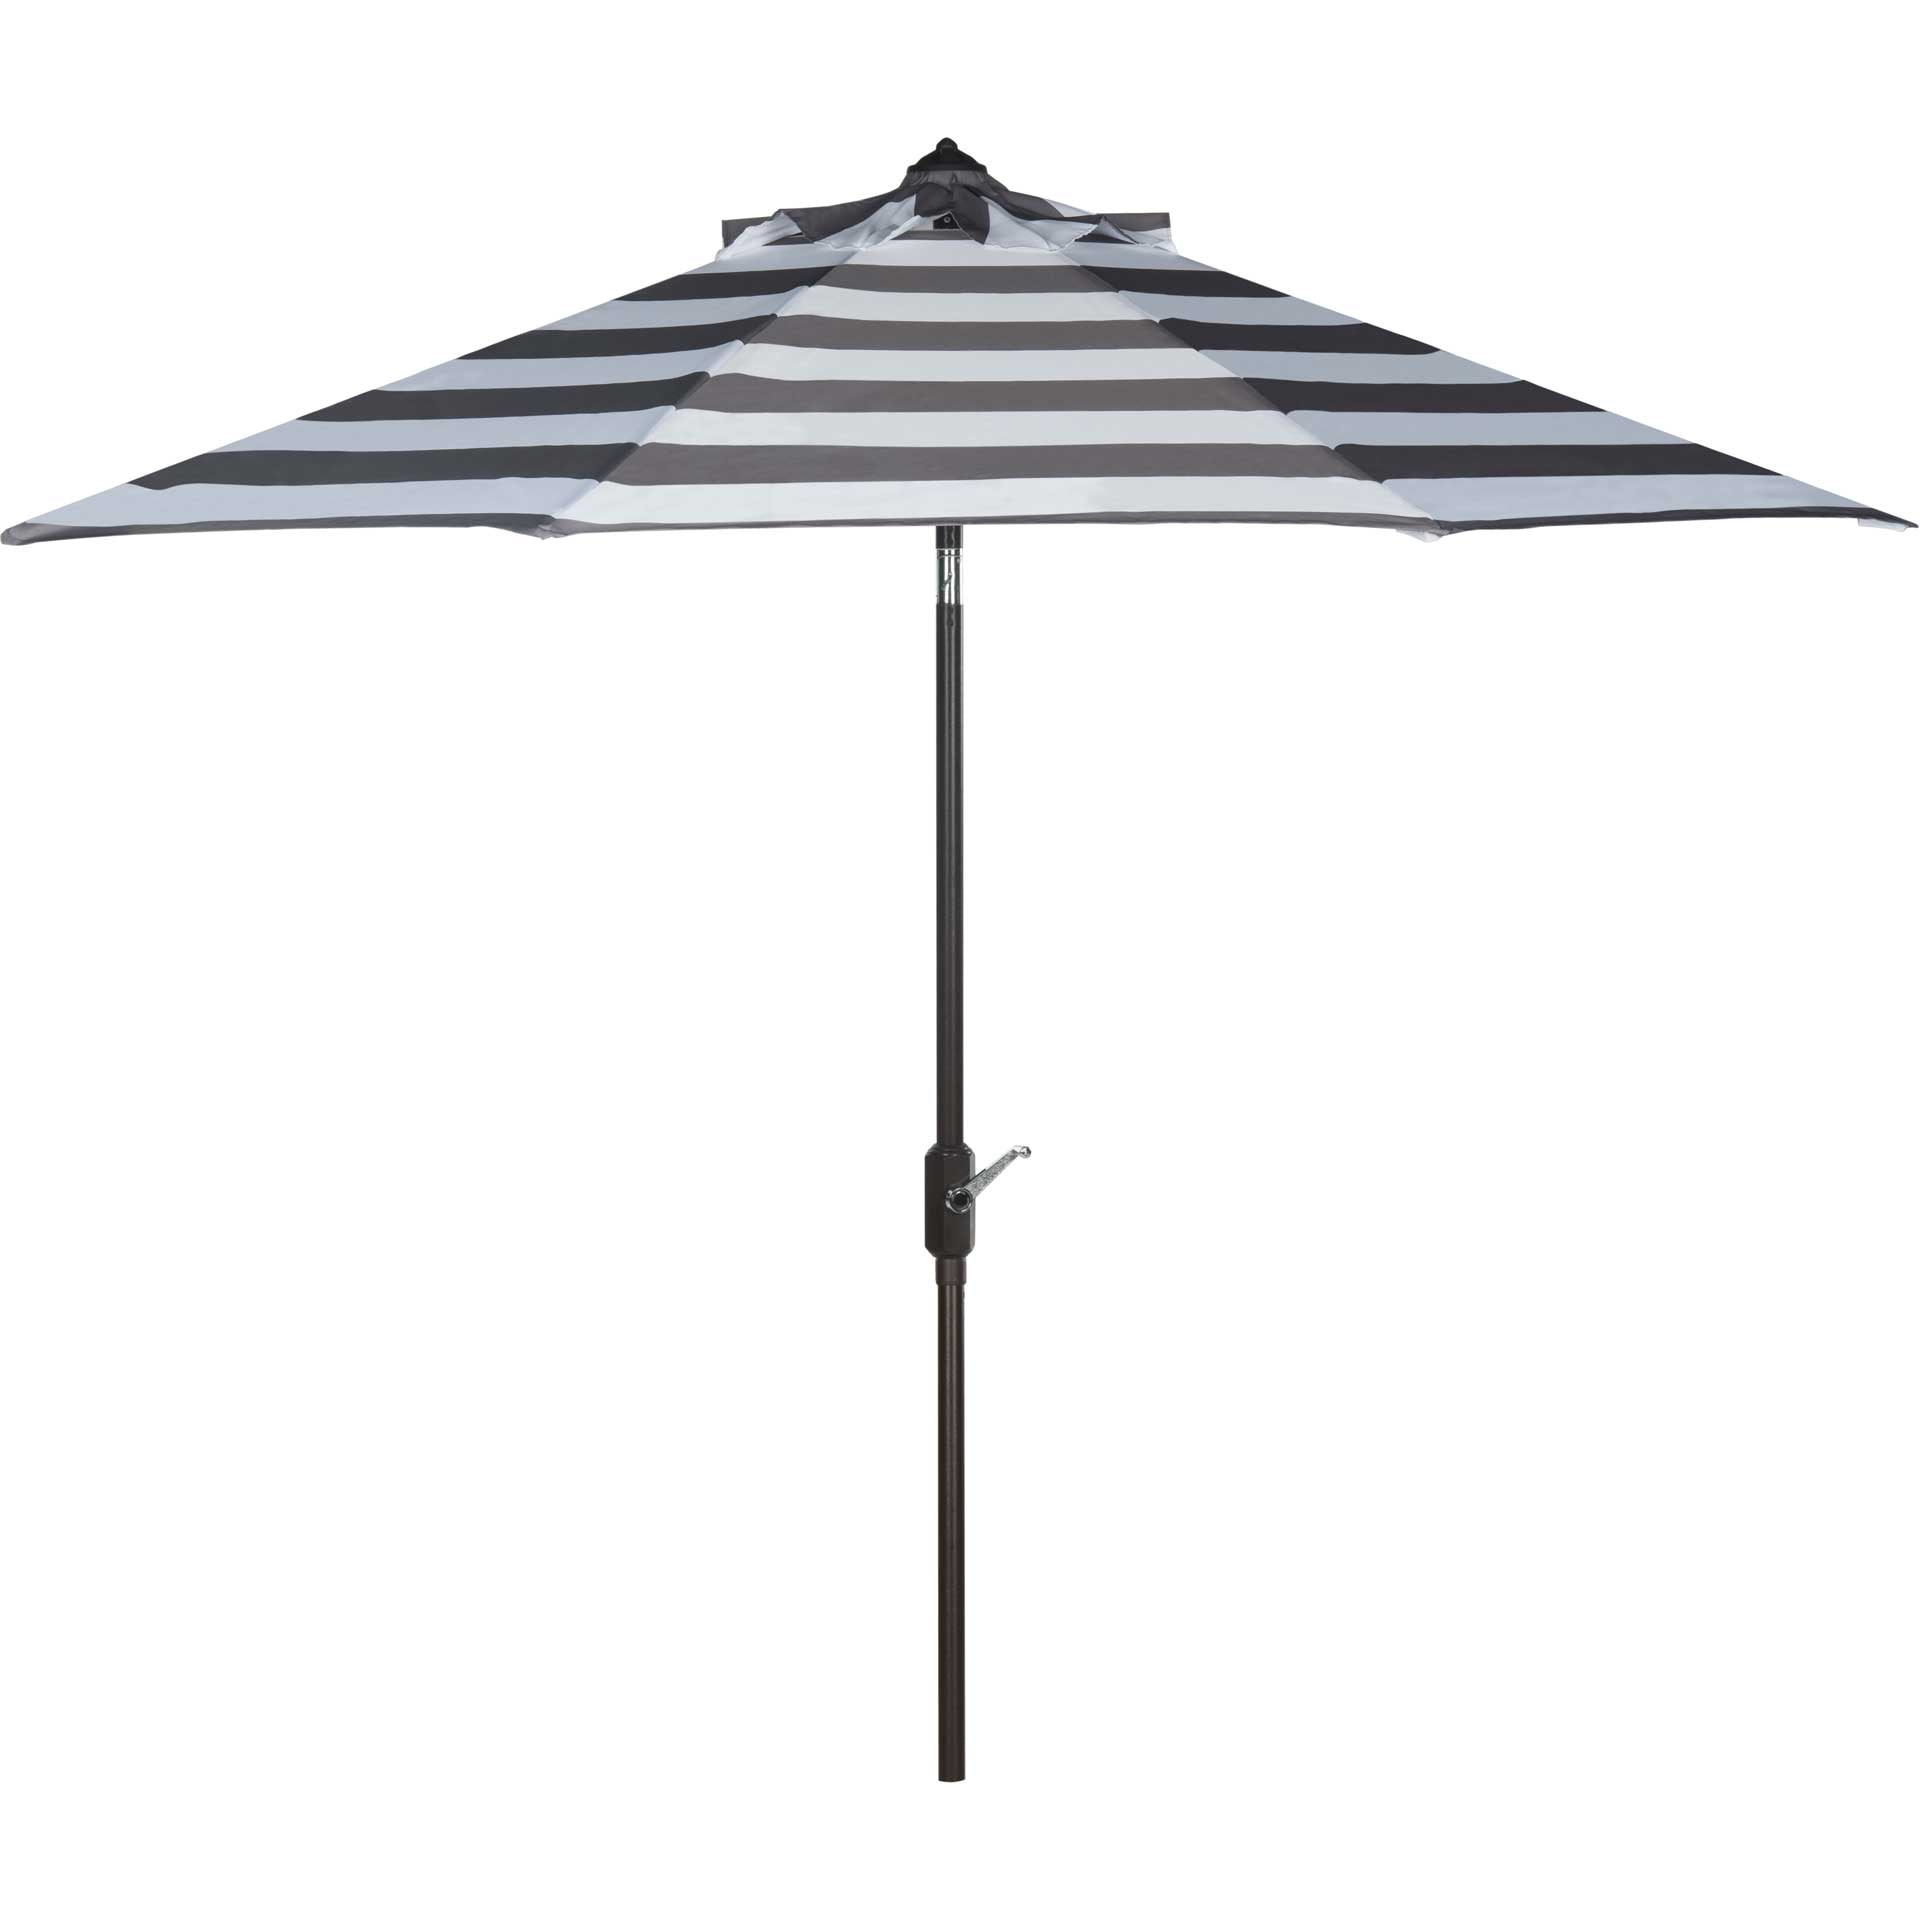 Irvin Uv Resistant Auto Tilt Umbrella Gray/White